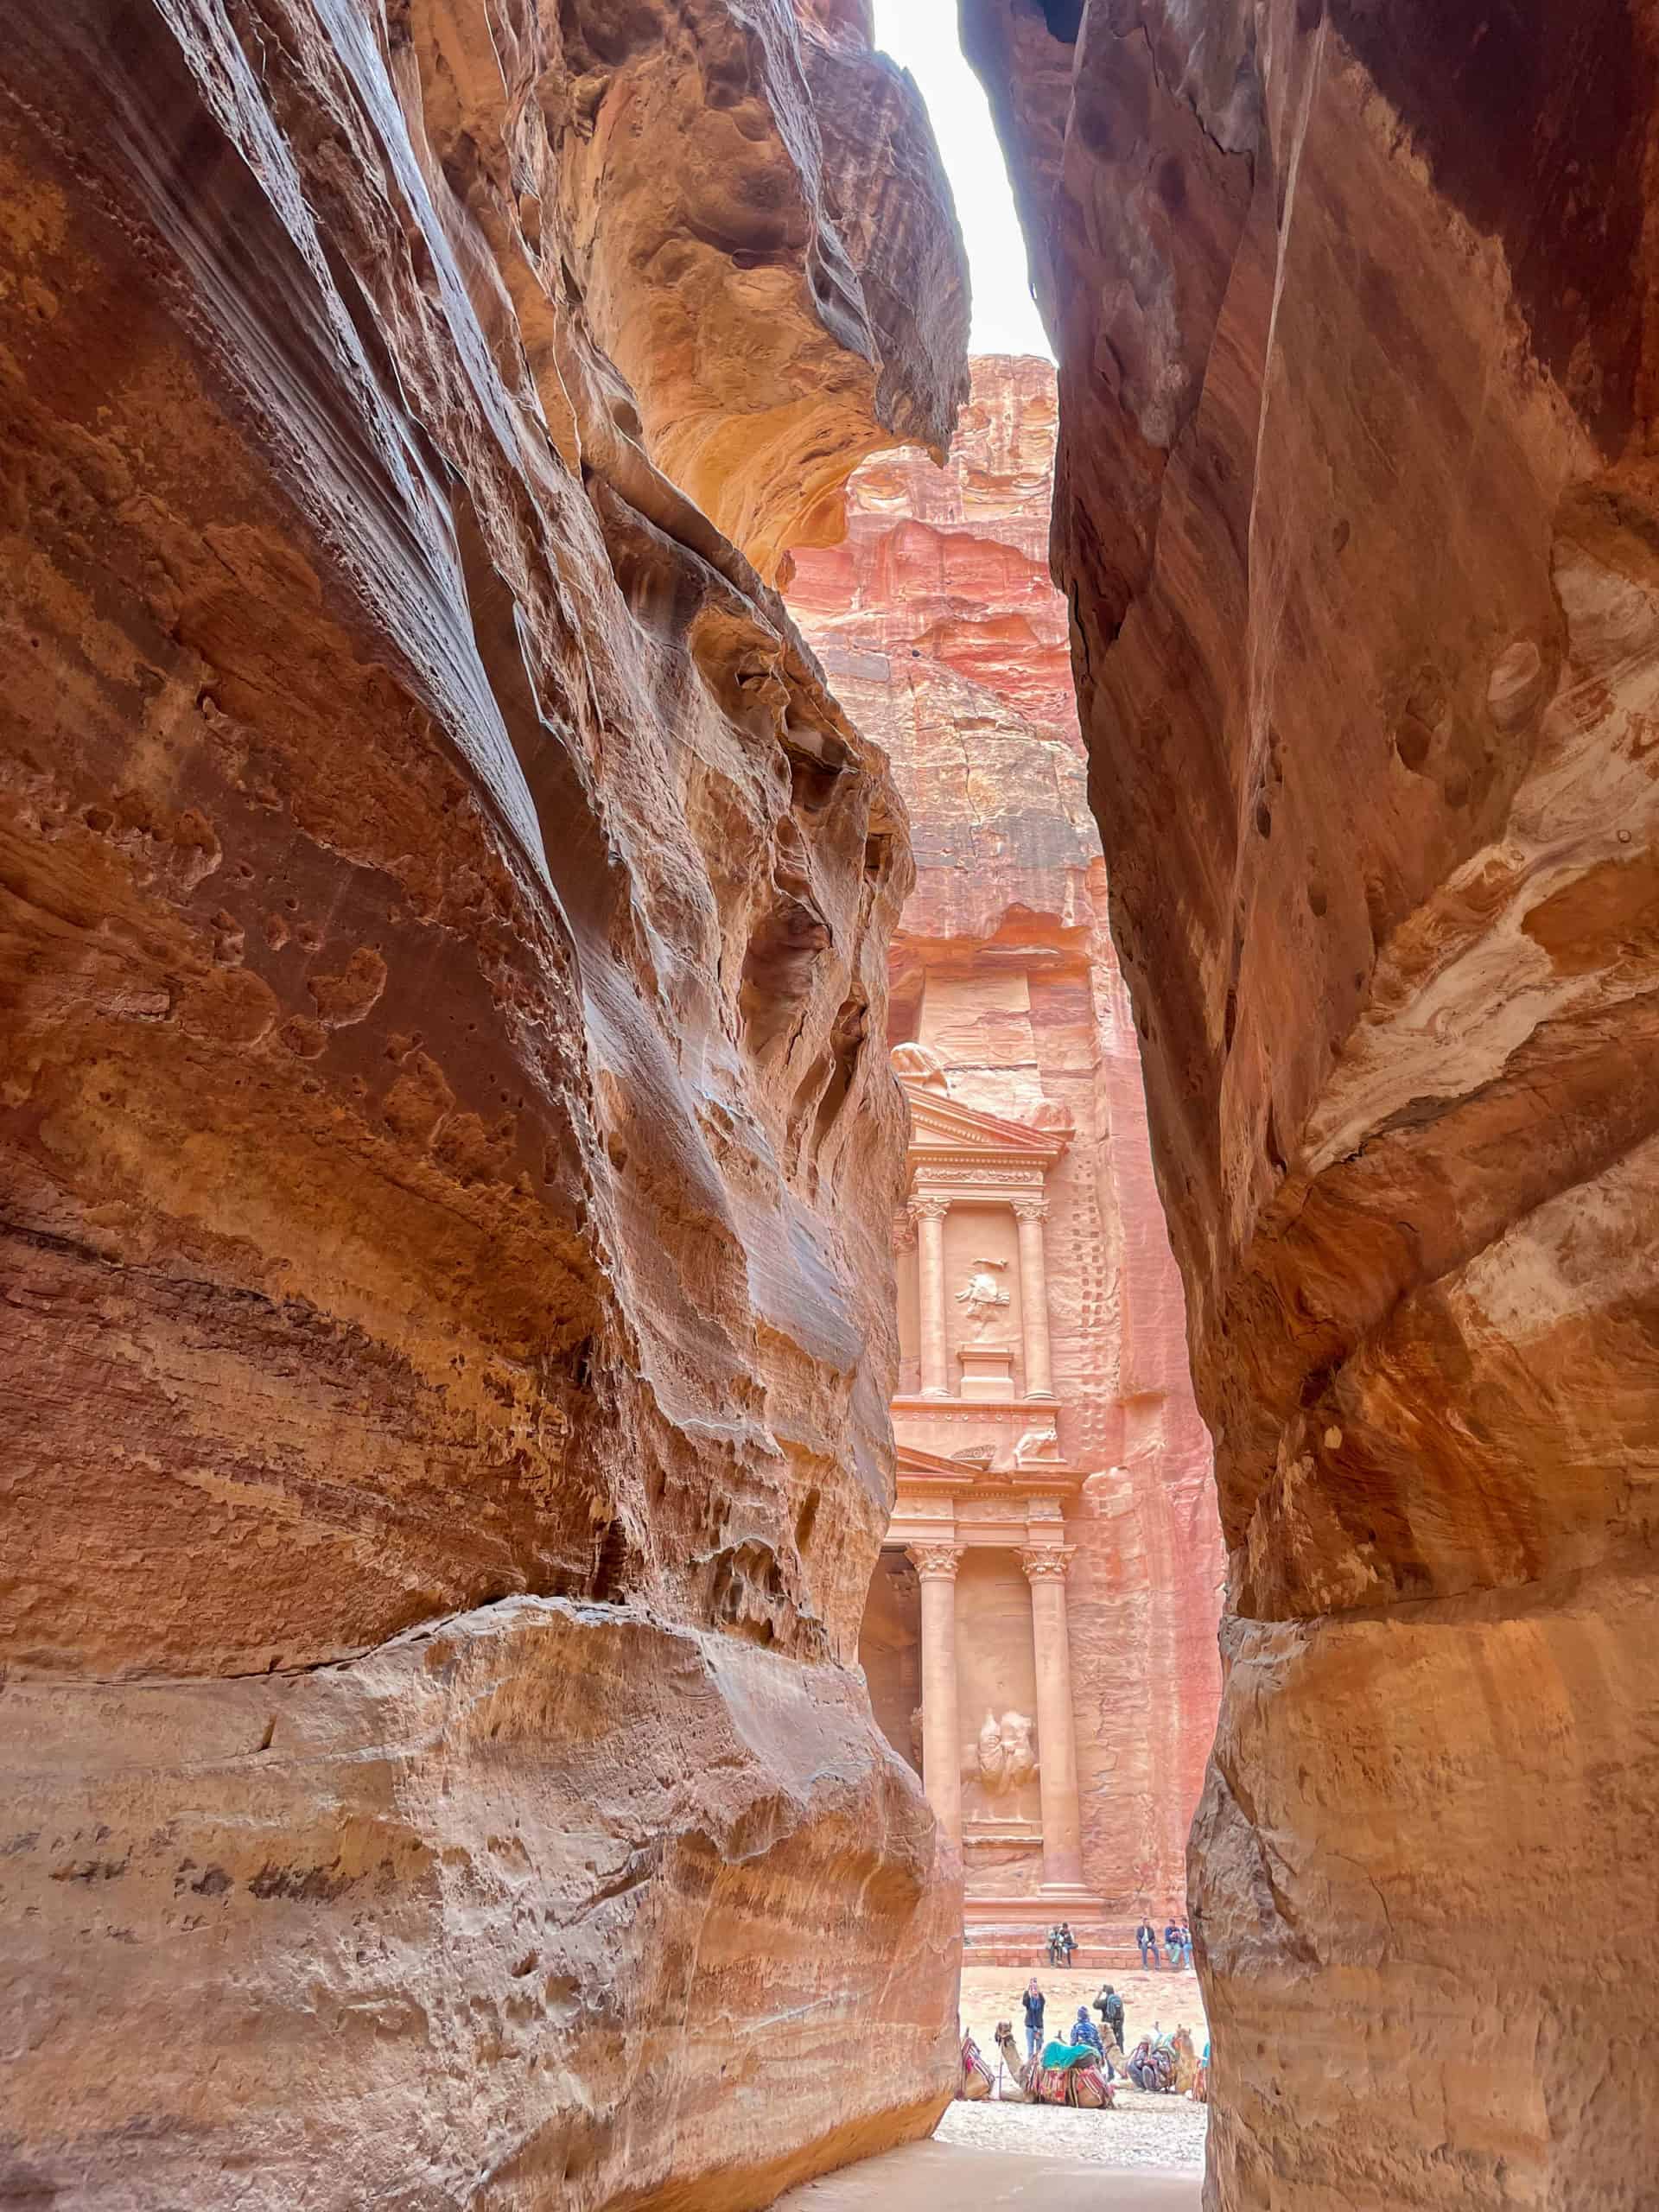 Jordan - Petra - approach to the Treasury through the canyon